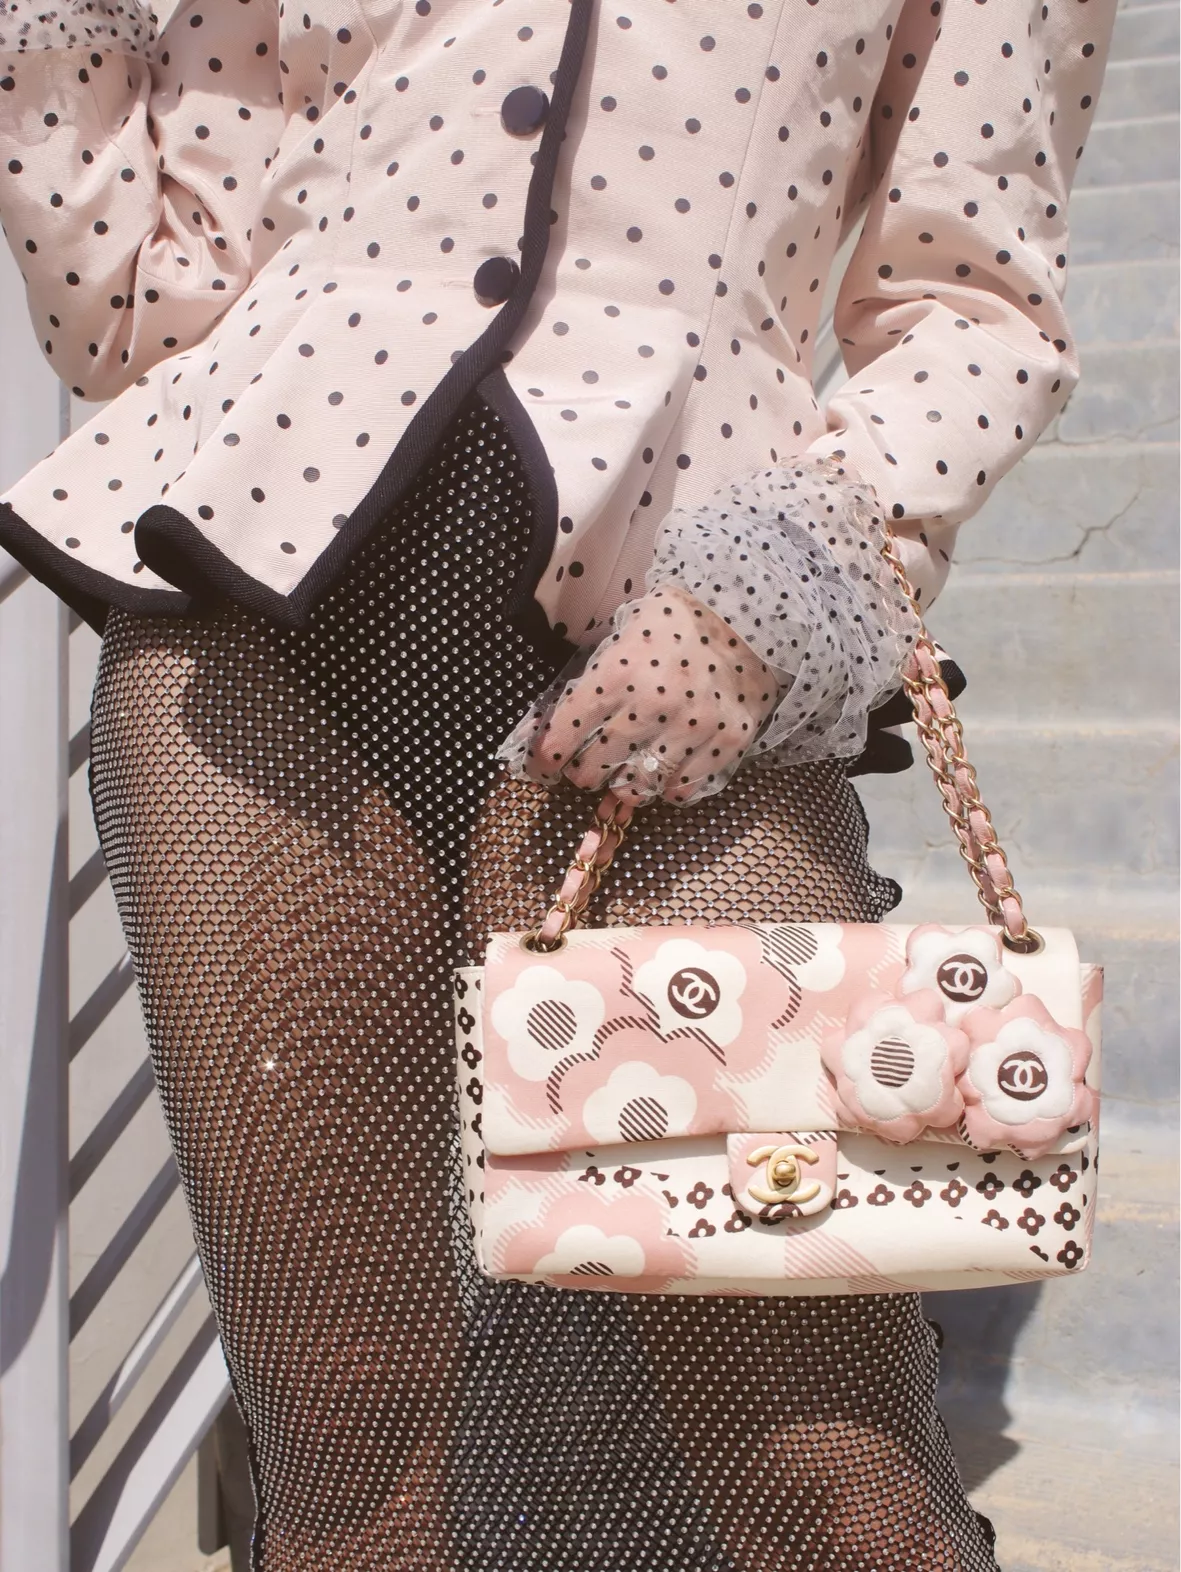 chanel designer handbags for women